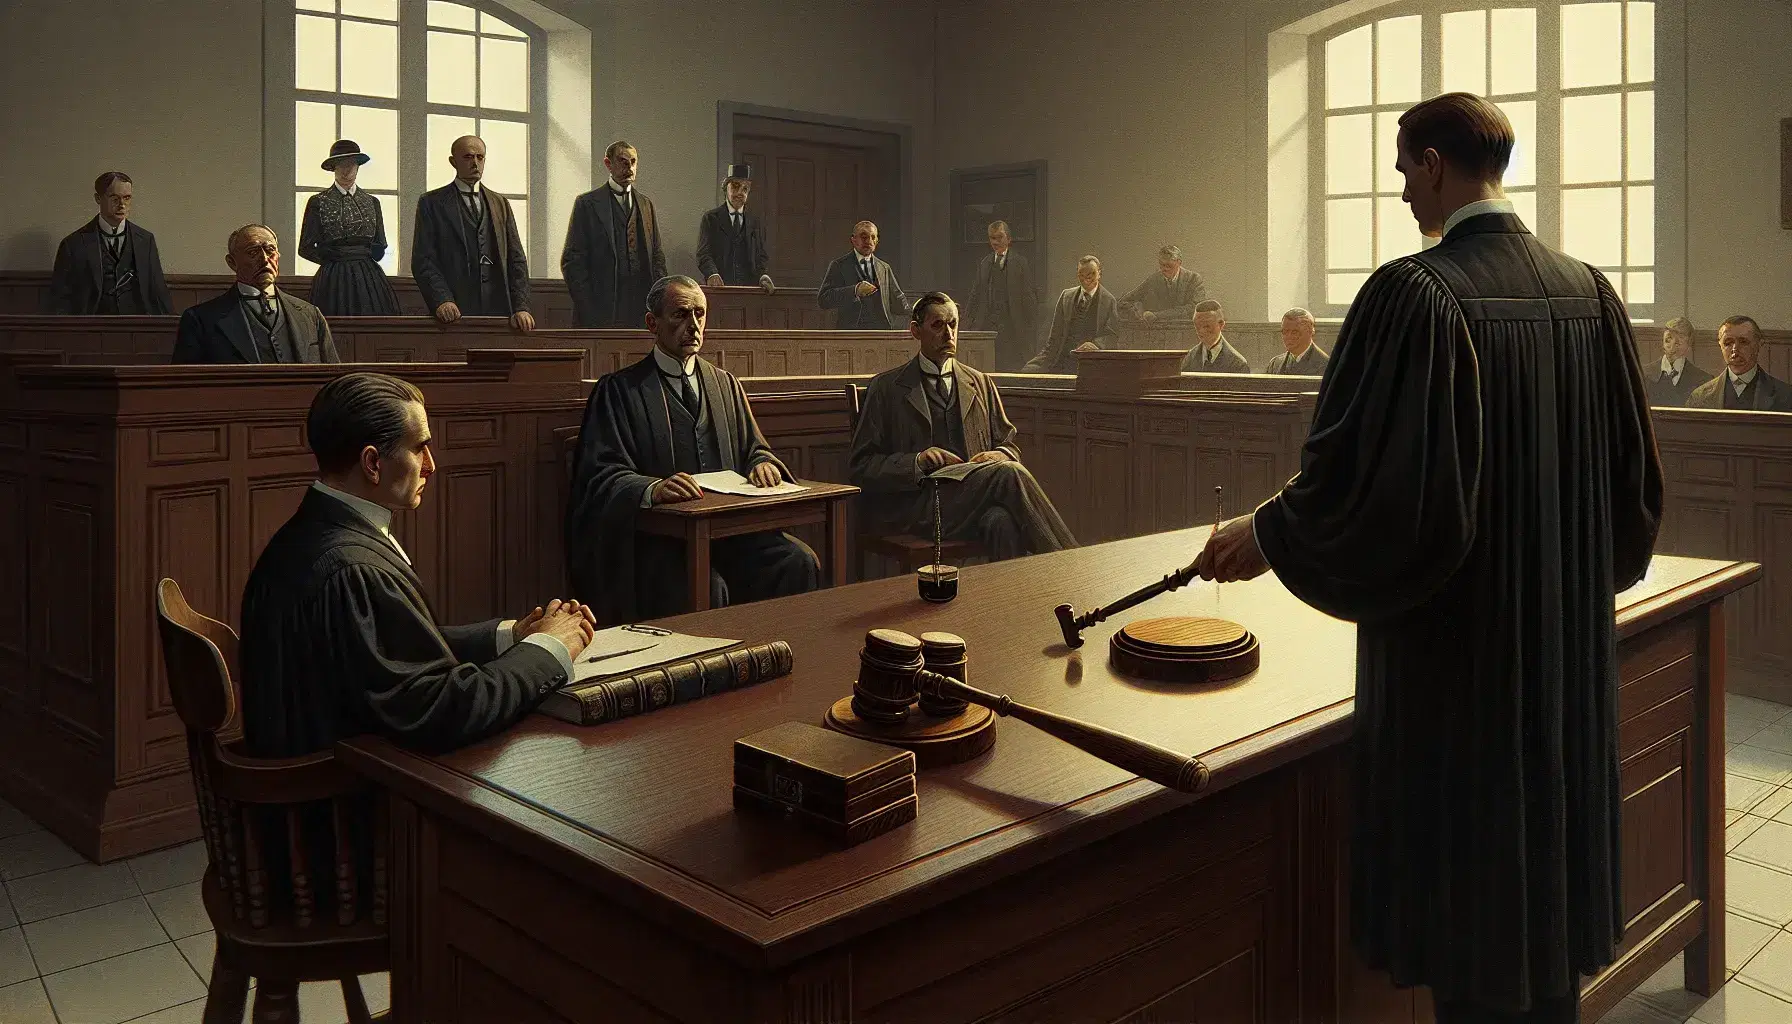 Escena de juicio en sala de tribunal con juez en toga, abogado y ciudadano de pie, público en bancos y mazo sobre mesa.